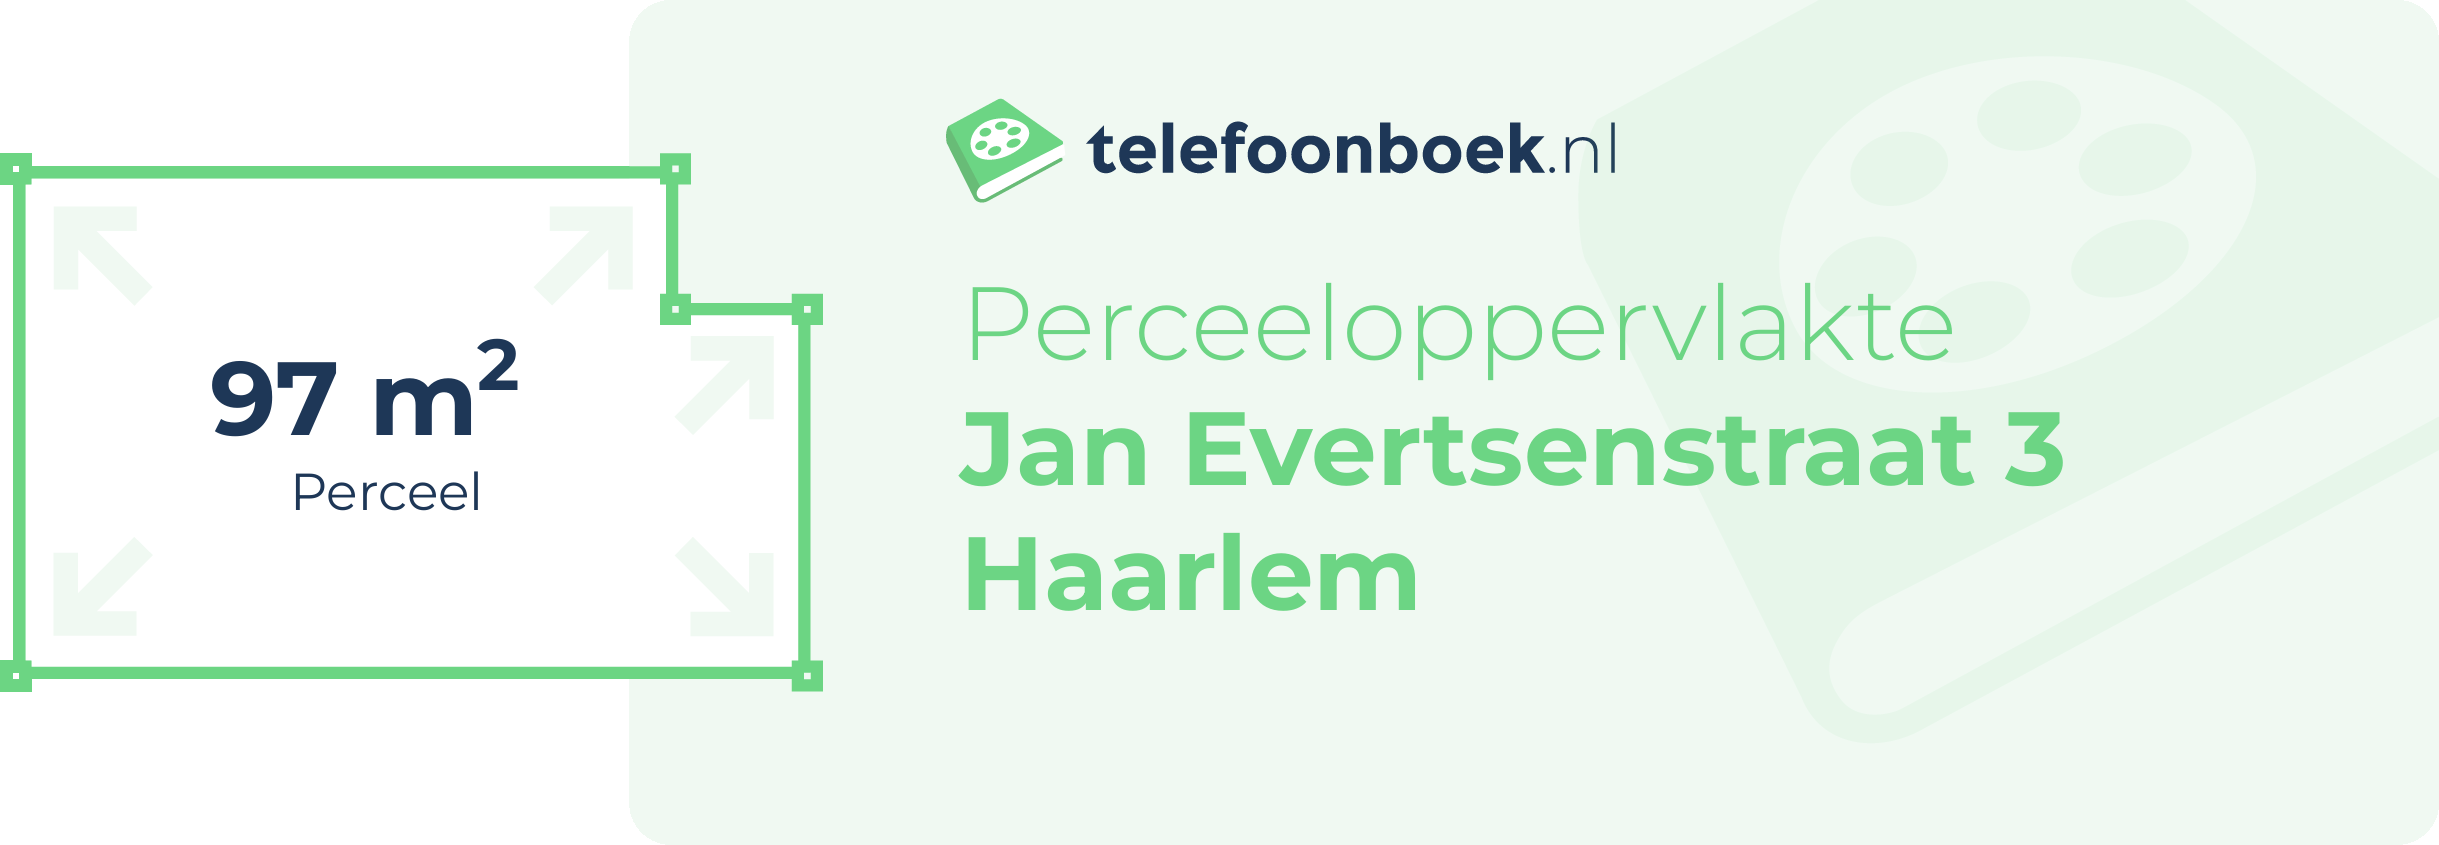 Perceeloppervlakte Jan Evertsenstraat 3 Haarlem